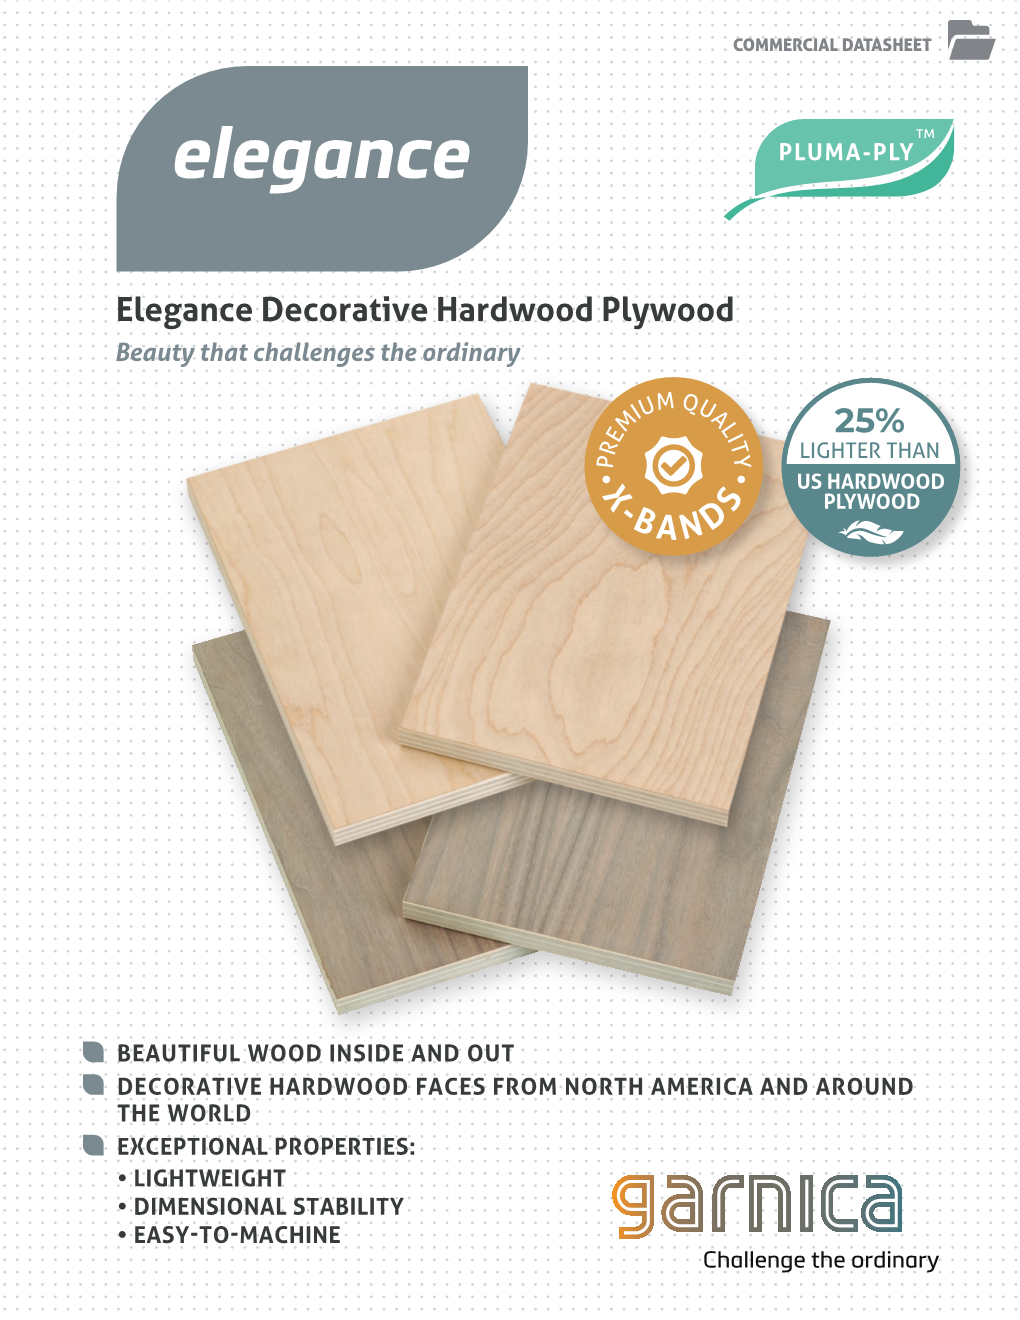 Elegance Decorative Hardwood Plywood X -BANDS